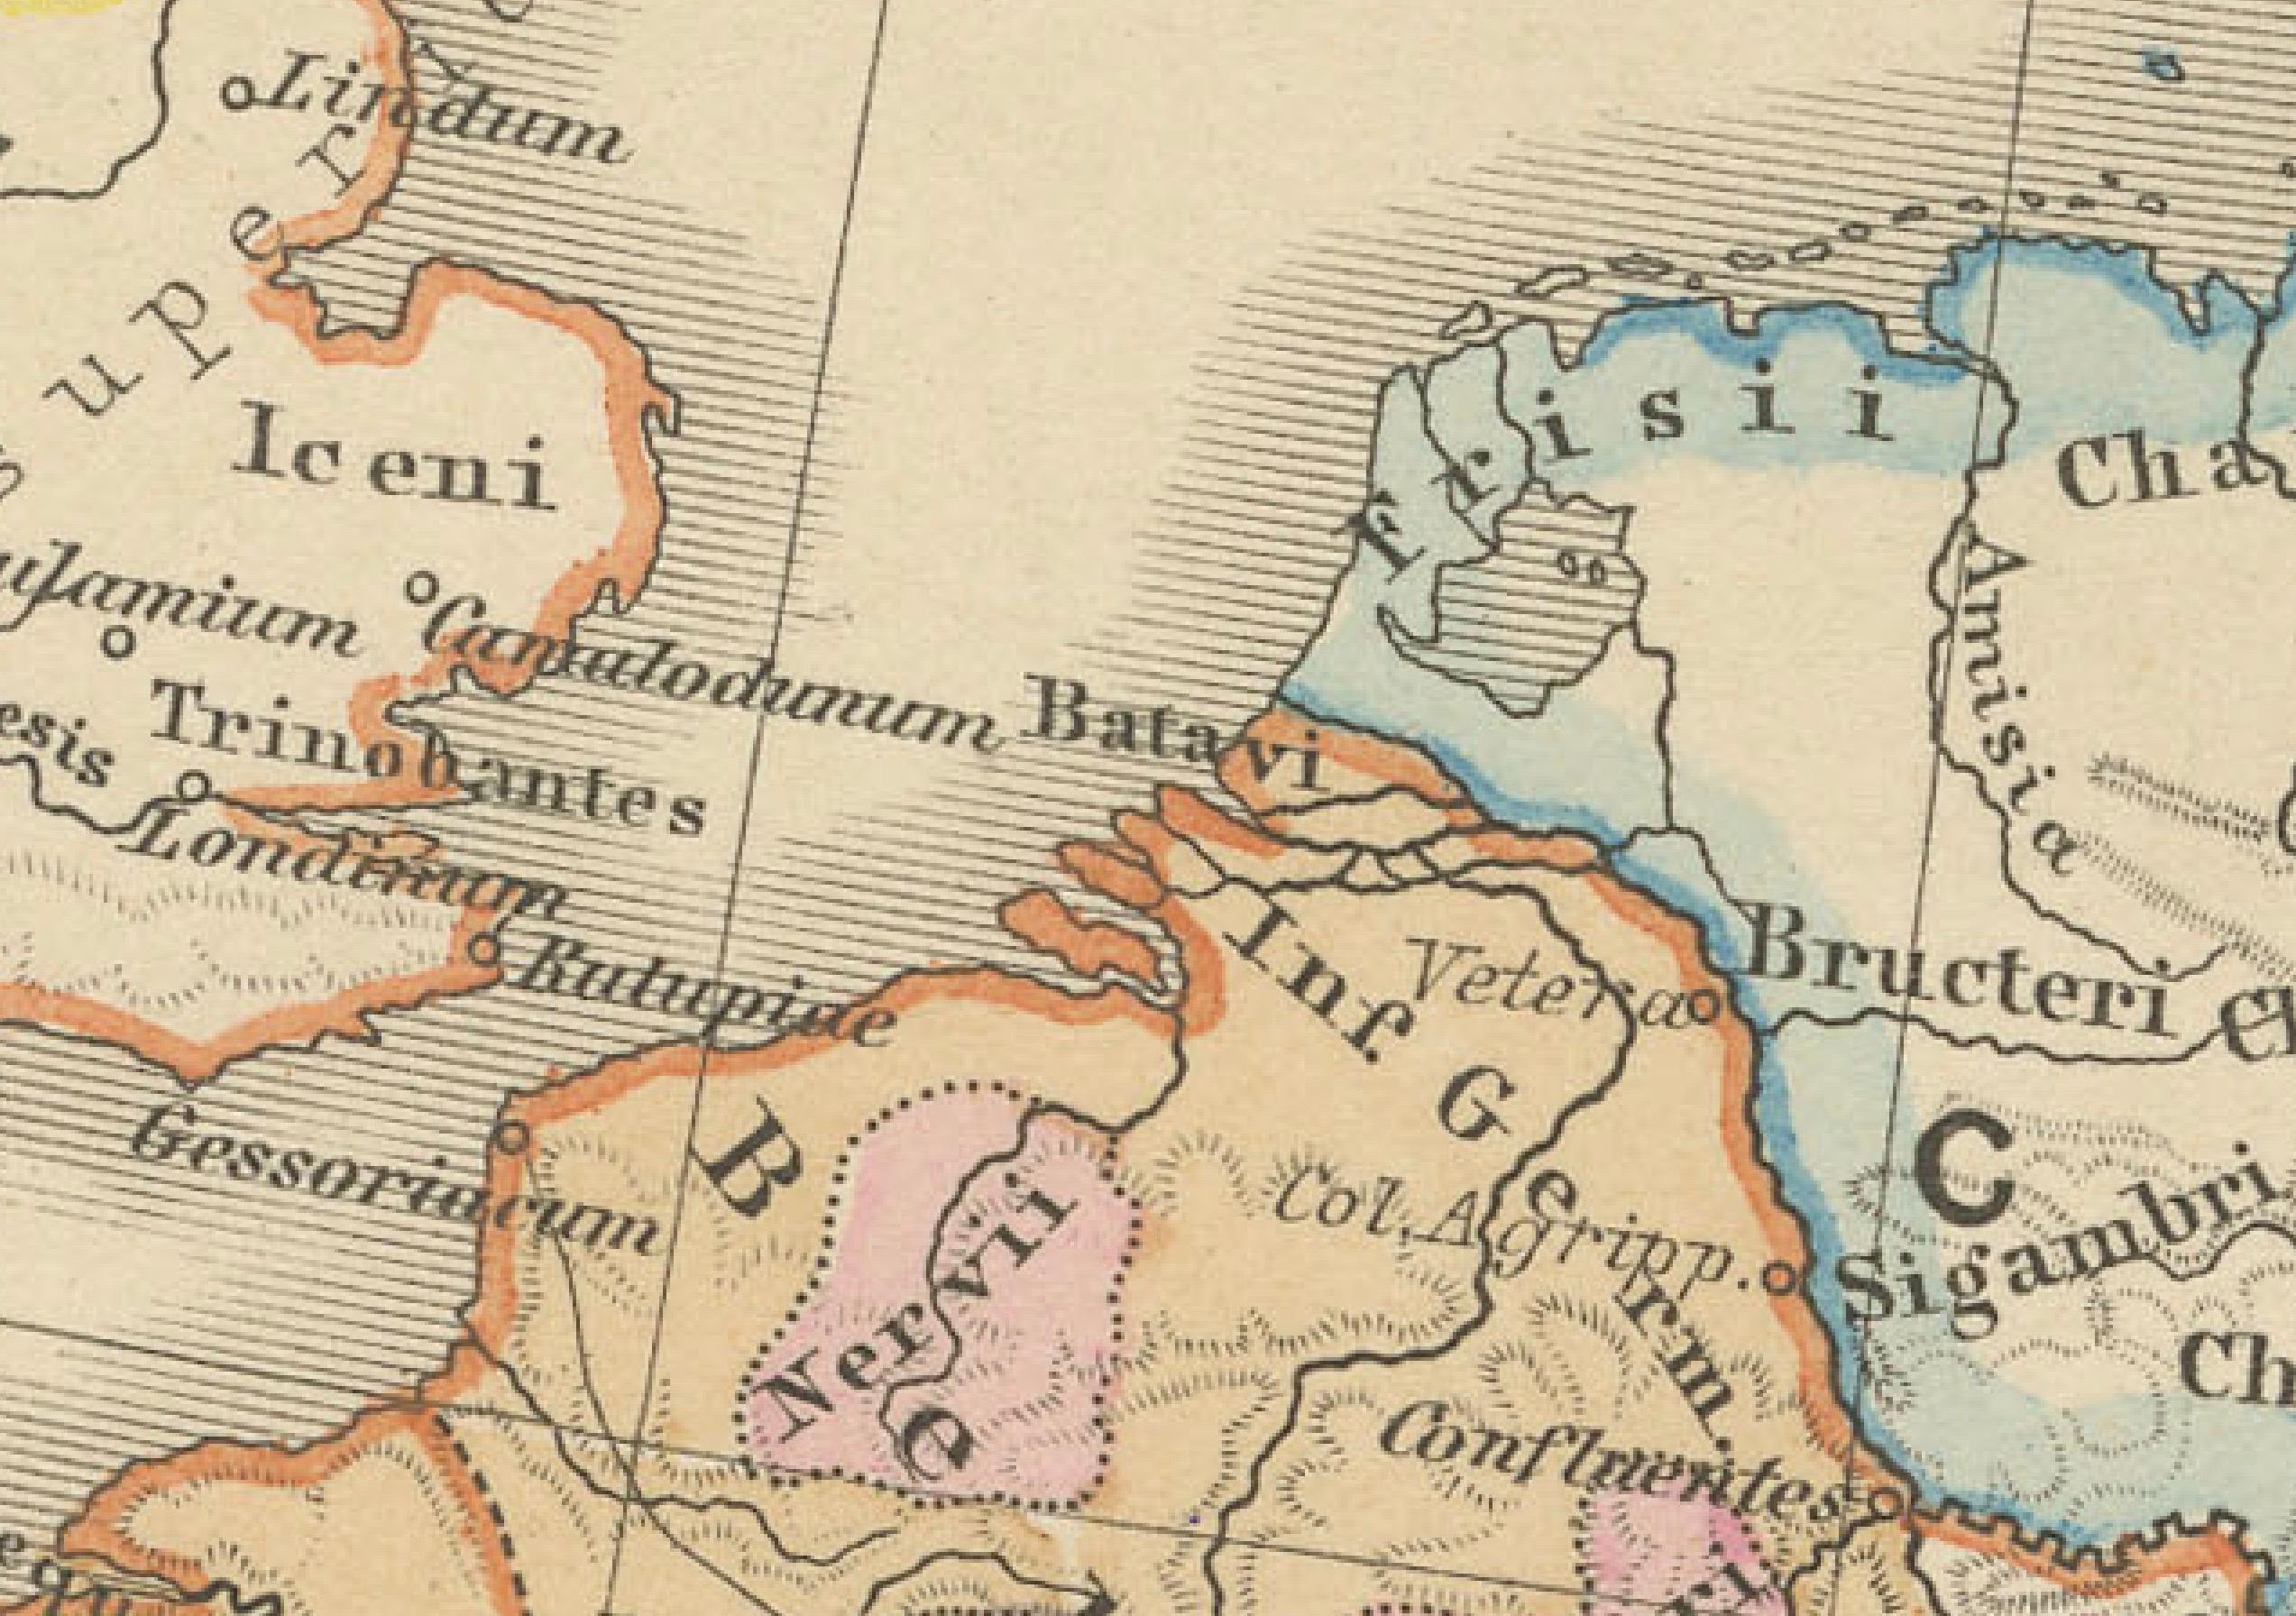 This original antique map, titled 